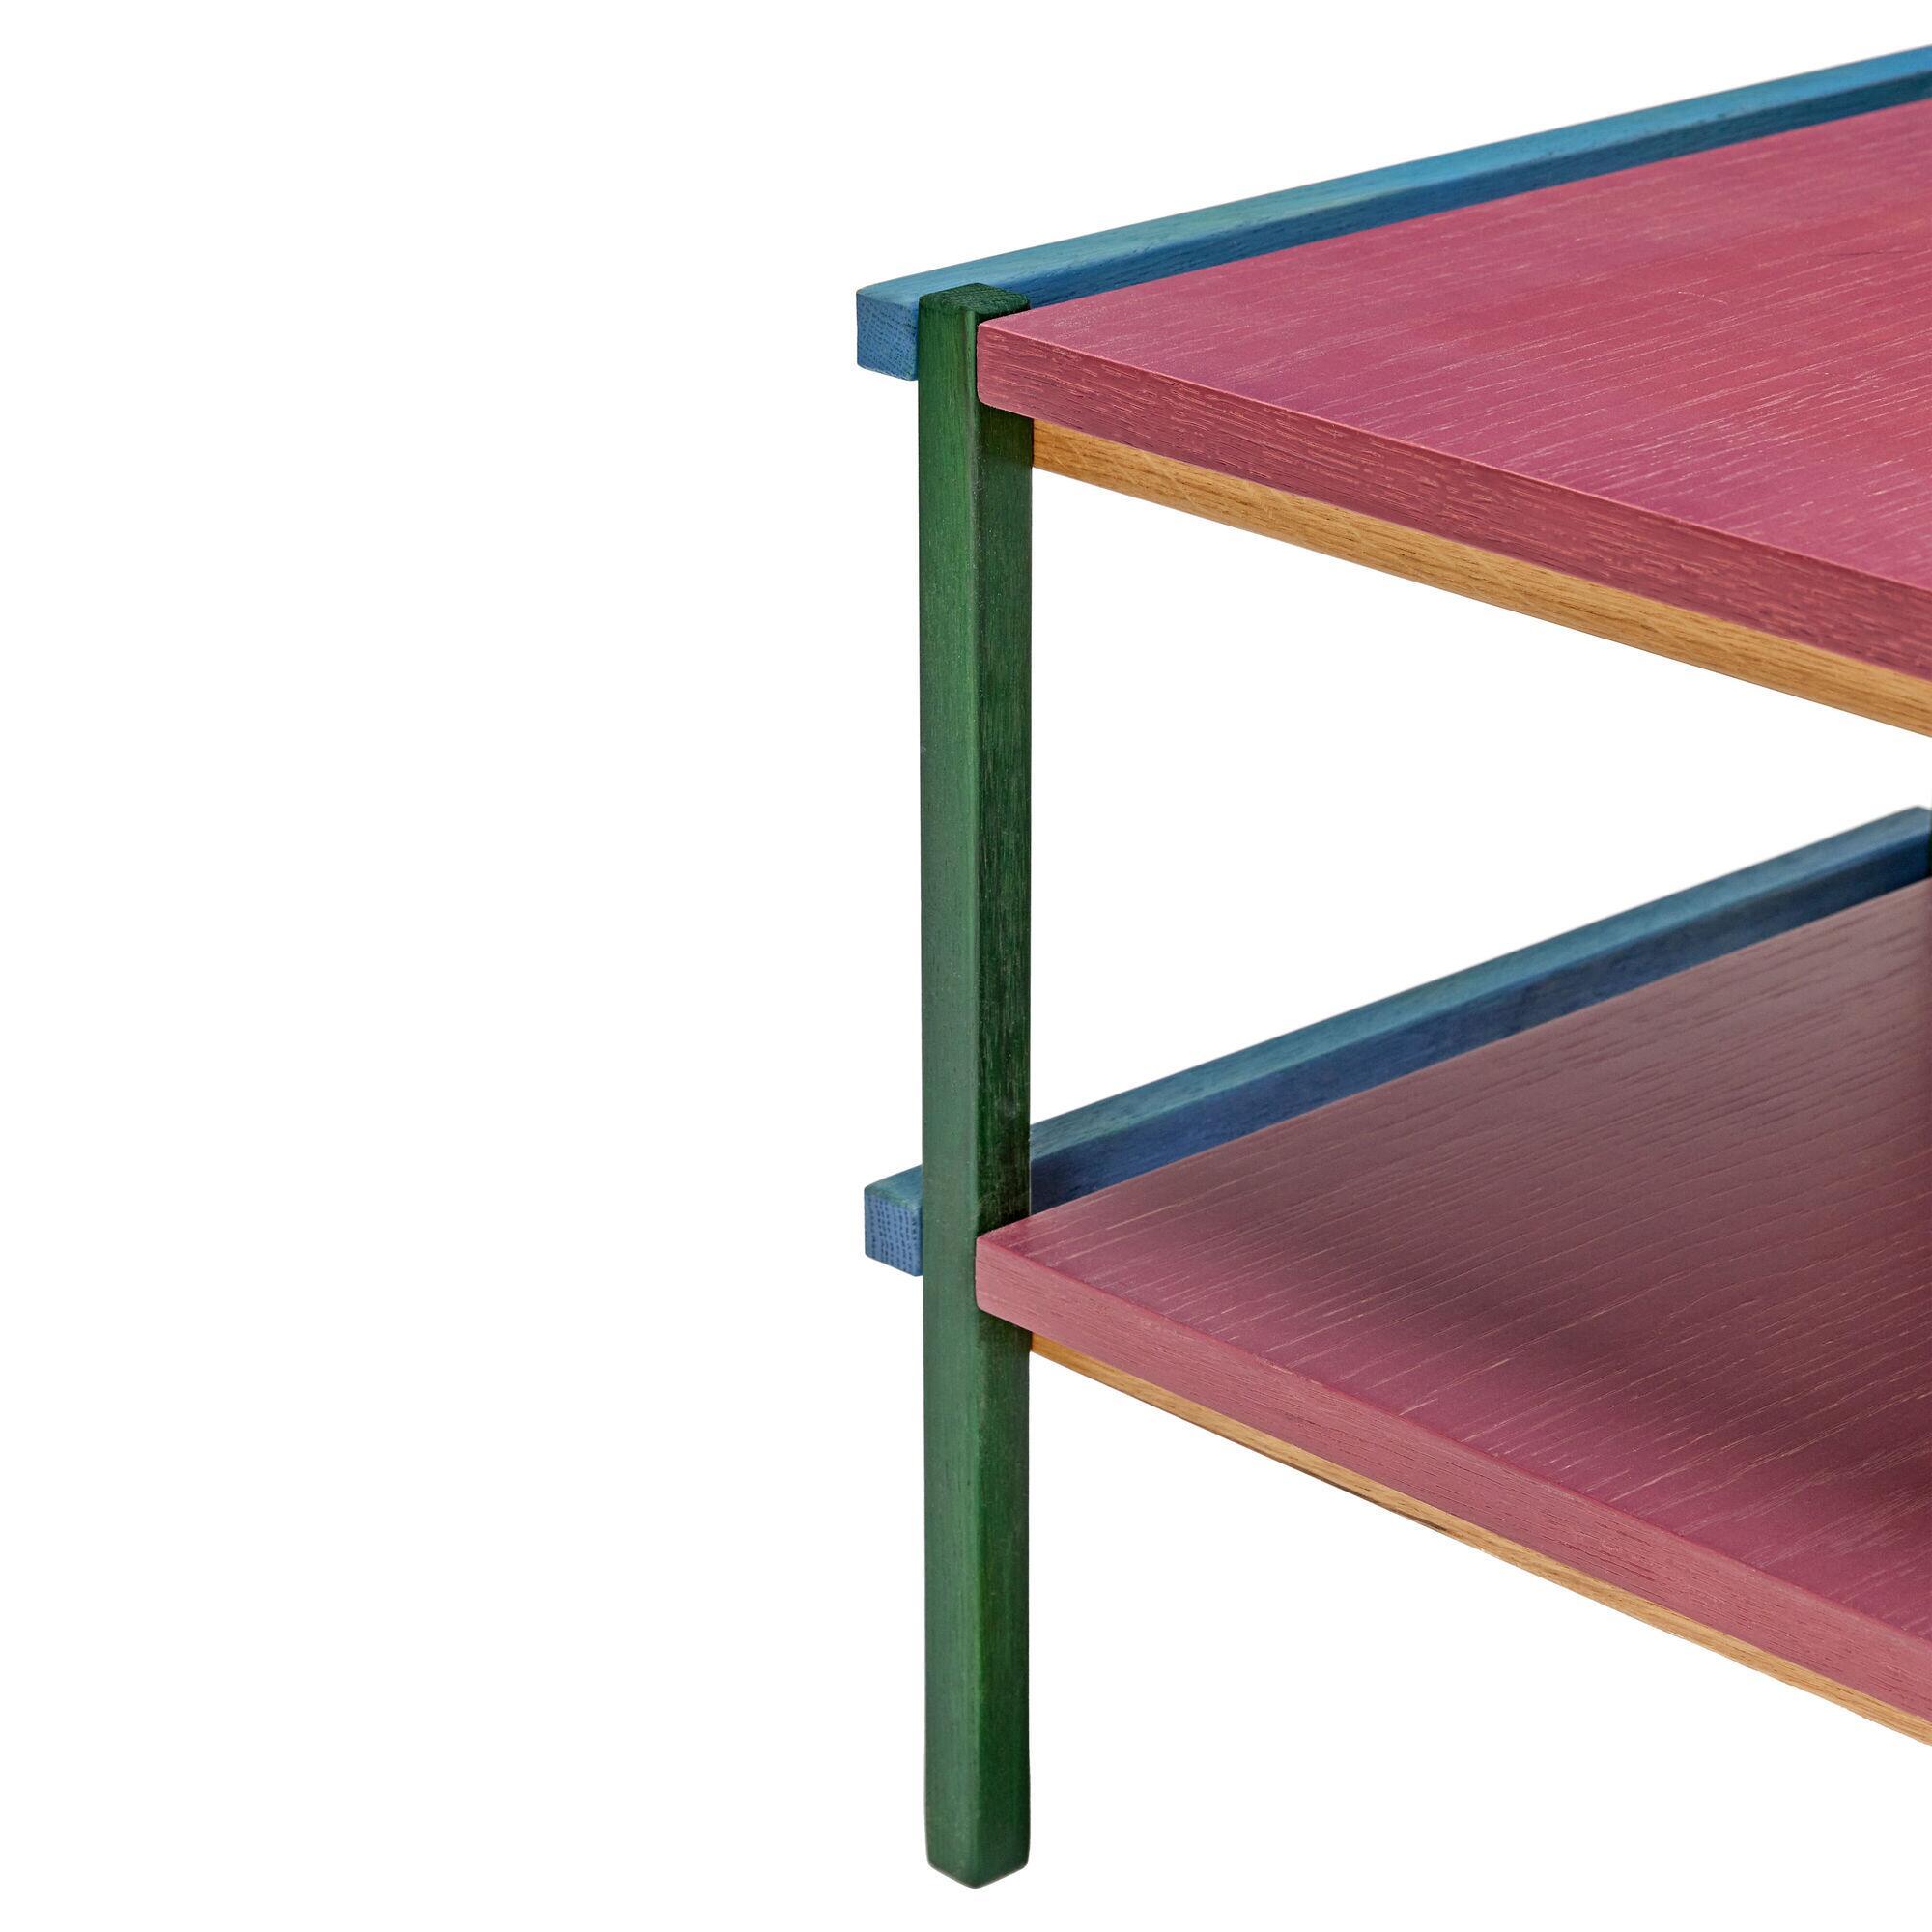  Crayon Sidebord - Blå, Burgundy, Grøn fra Hübsch Interiør i MDF, Egetræsfiner, Egetræ (Varenr: 021410)